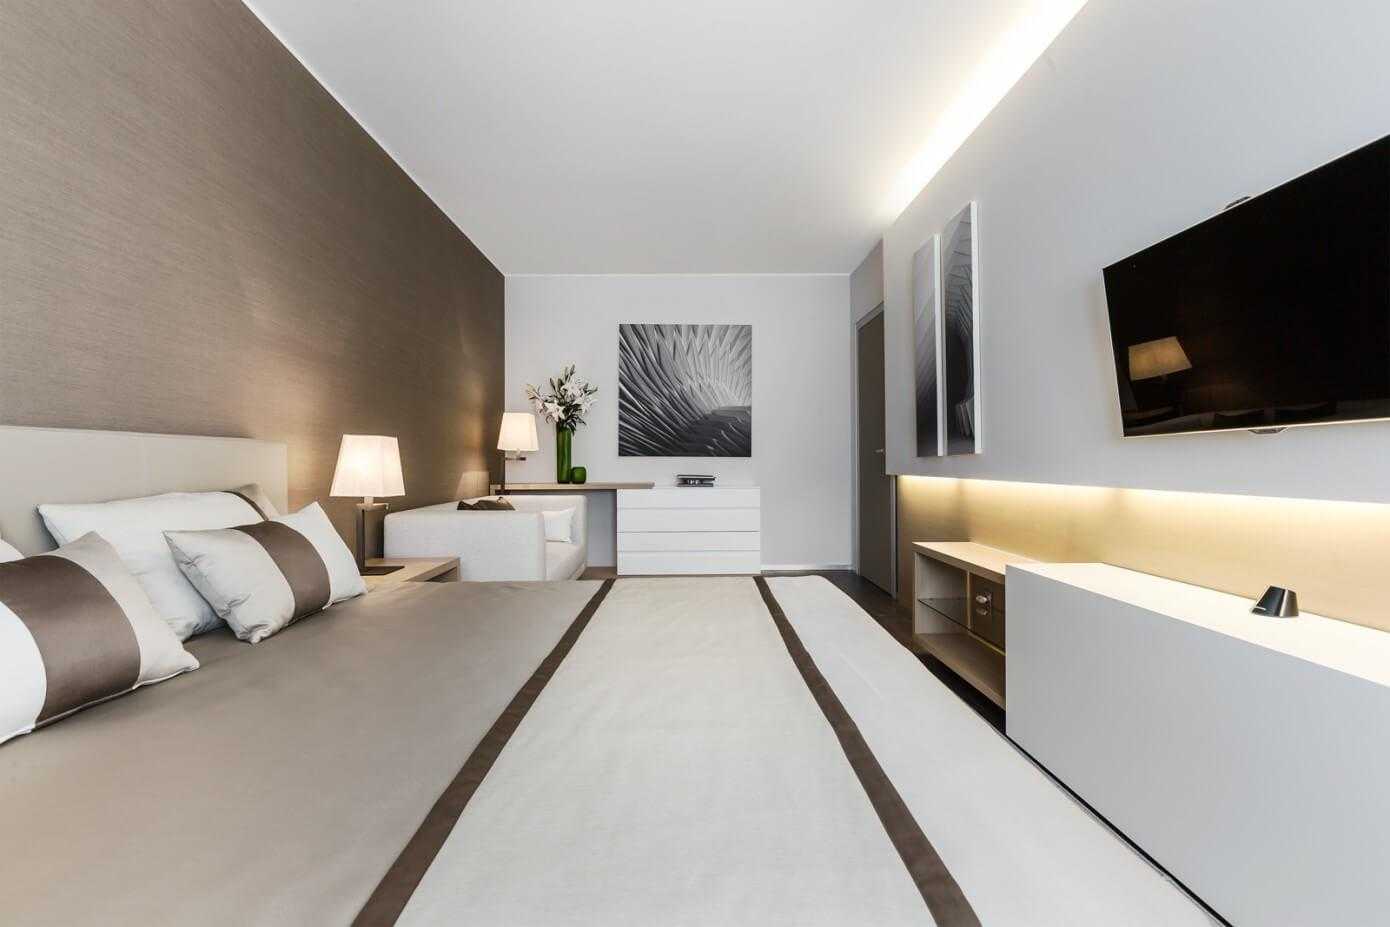 Идеи дизайна для спальни в серых тонах